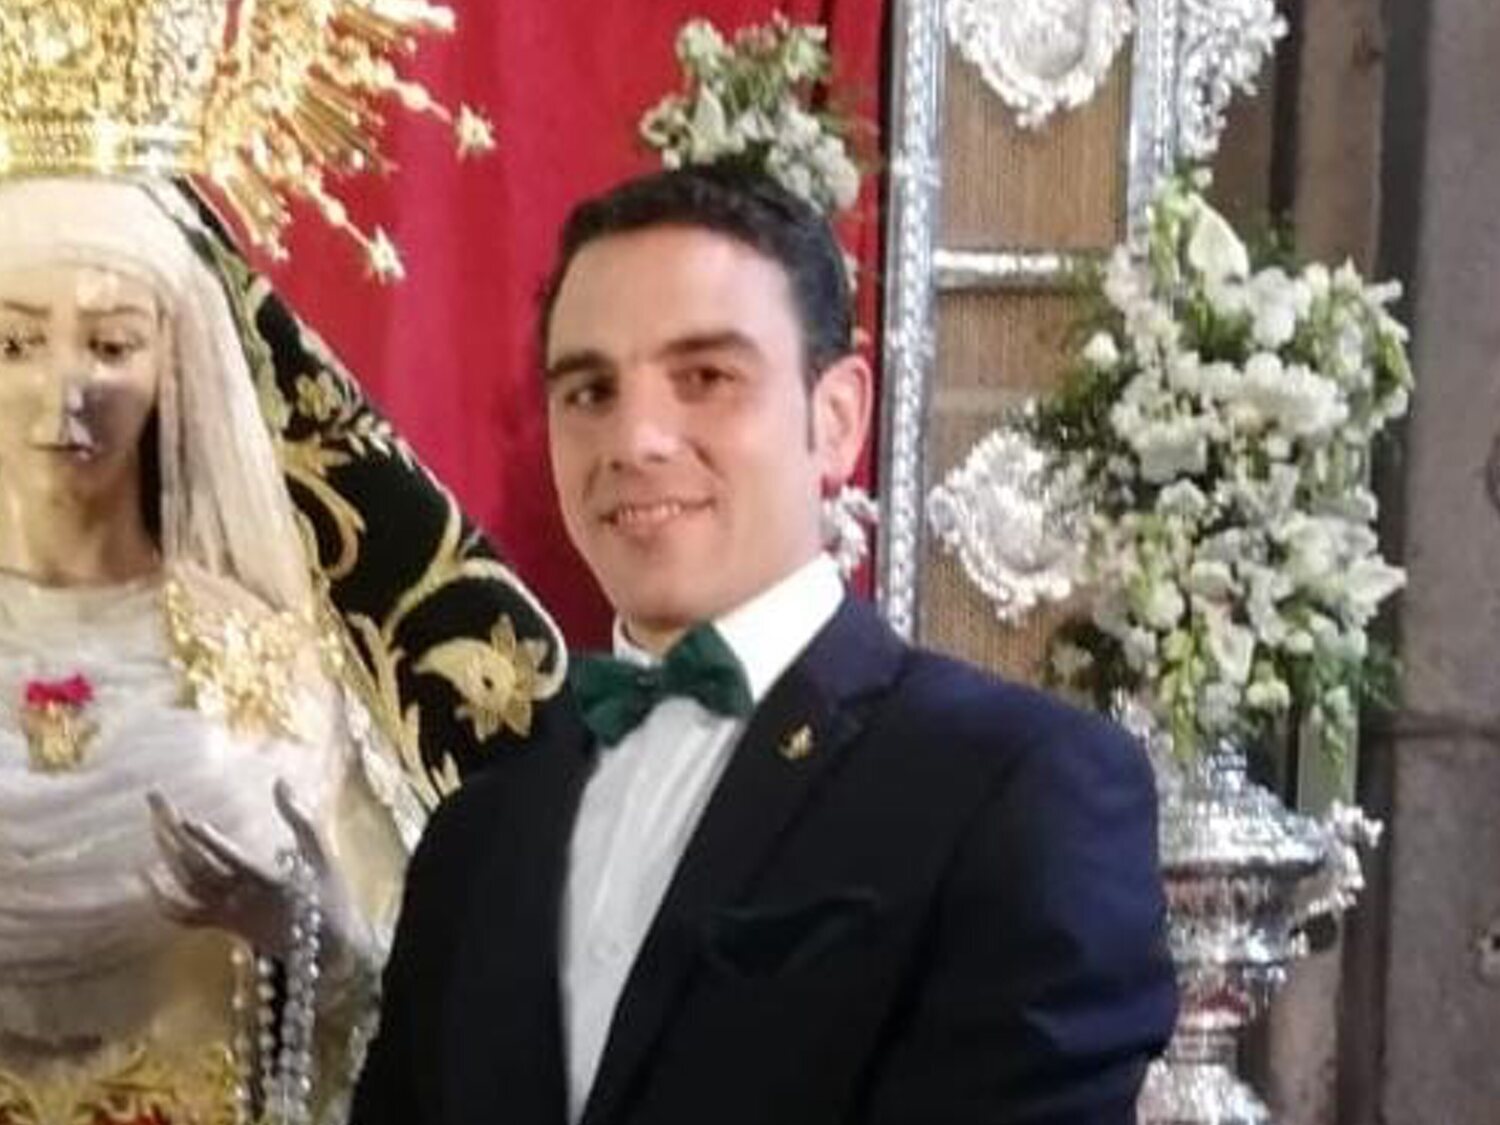 Encuentran muerto al novillero y ex concejal de VOX Carlos García Muñoz a los 40 años